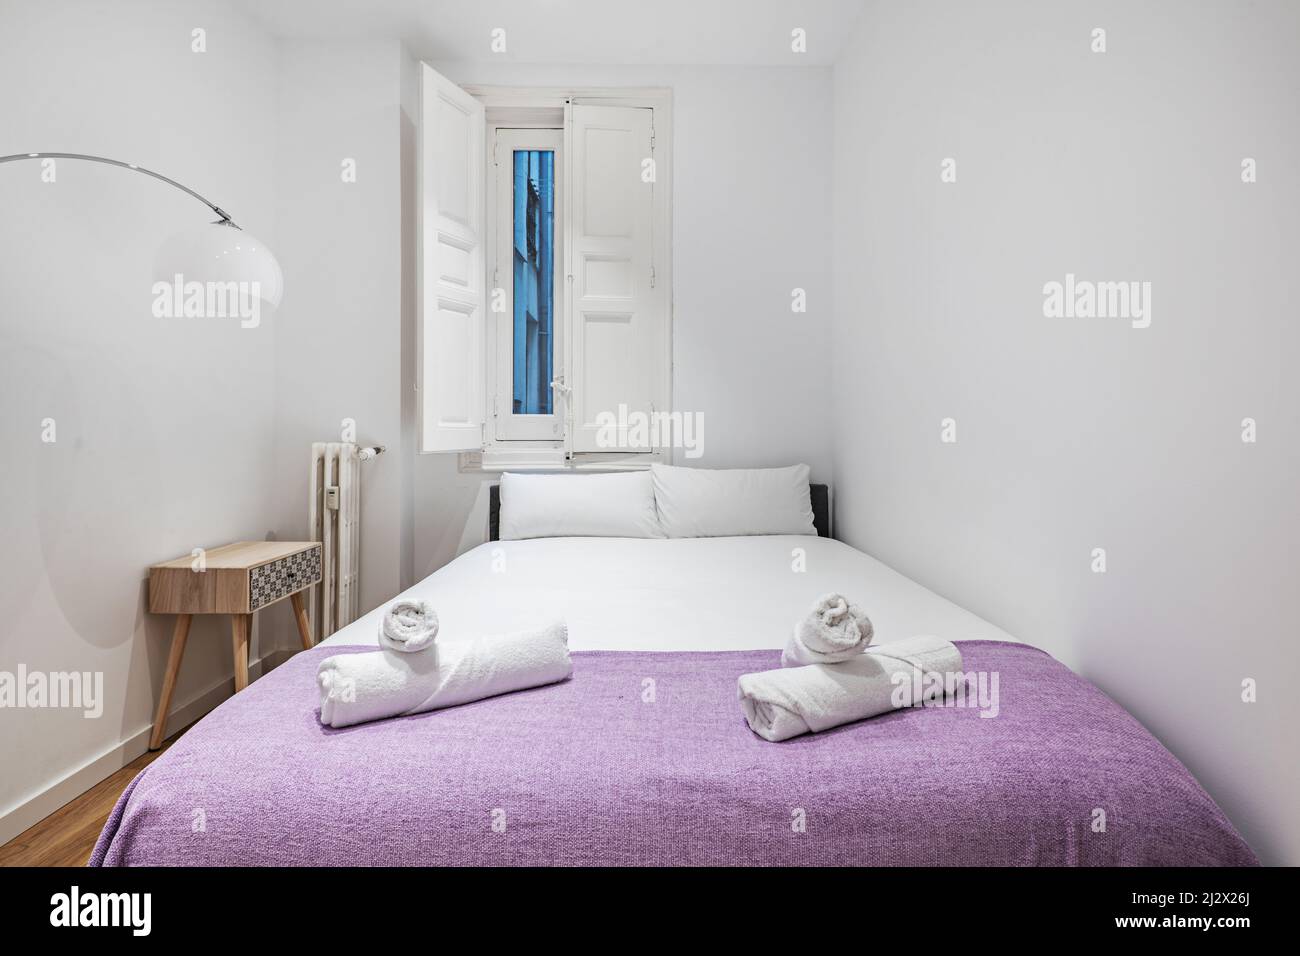 Schlafzimmer mit Doppelbett mit violetter Decke auf dem Bett, gusseisernem Heizkörper und Fenster mit weißen Holzfenstern Stockfoto